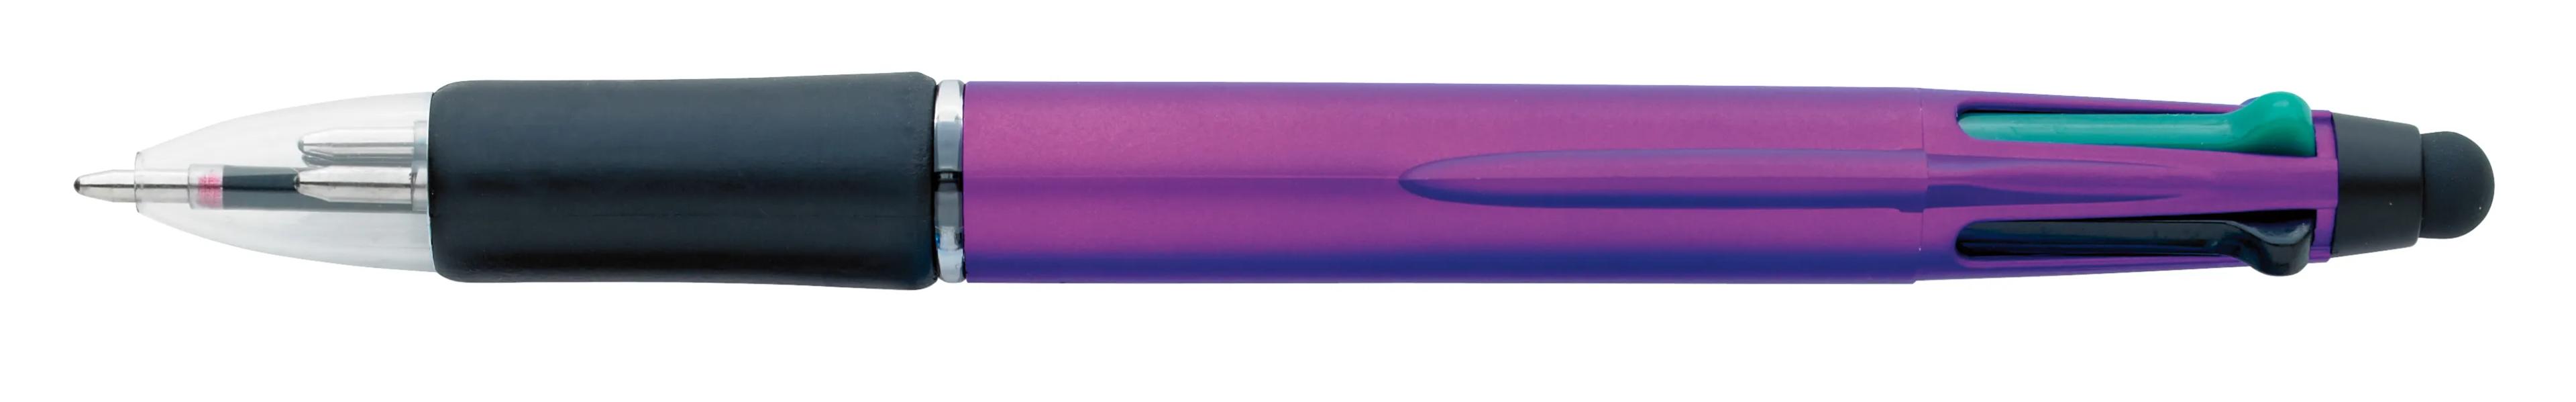 Orbitor Metallic Stylus Pen 22 of 56